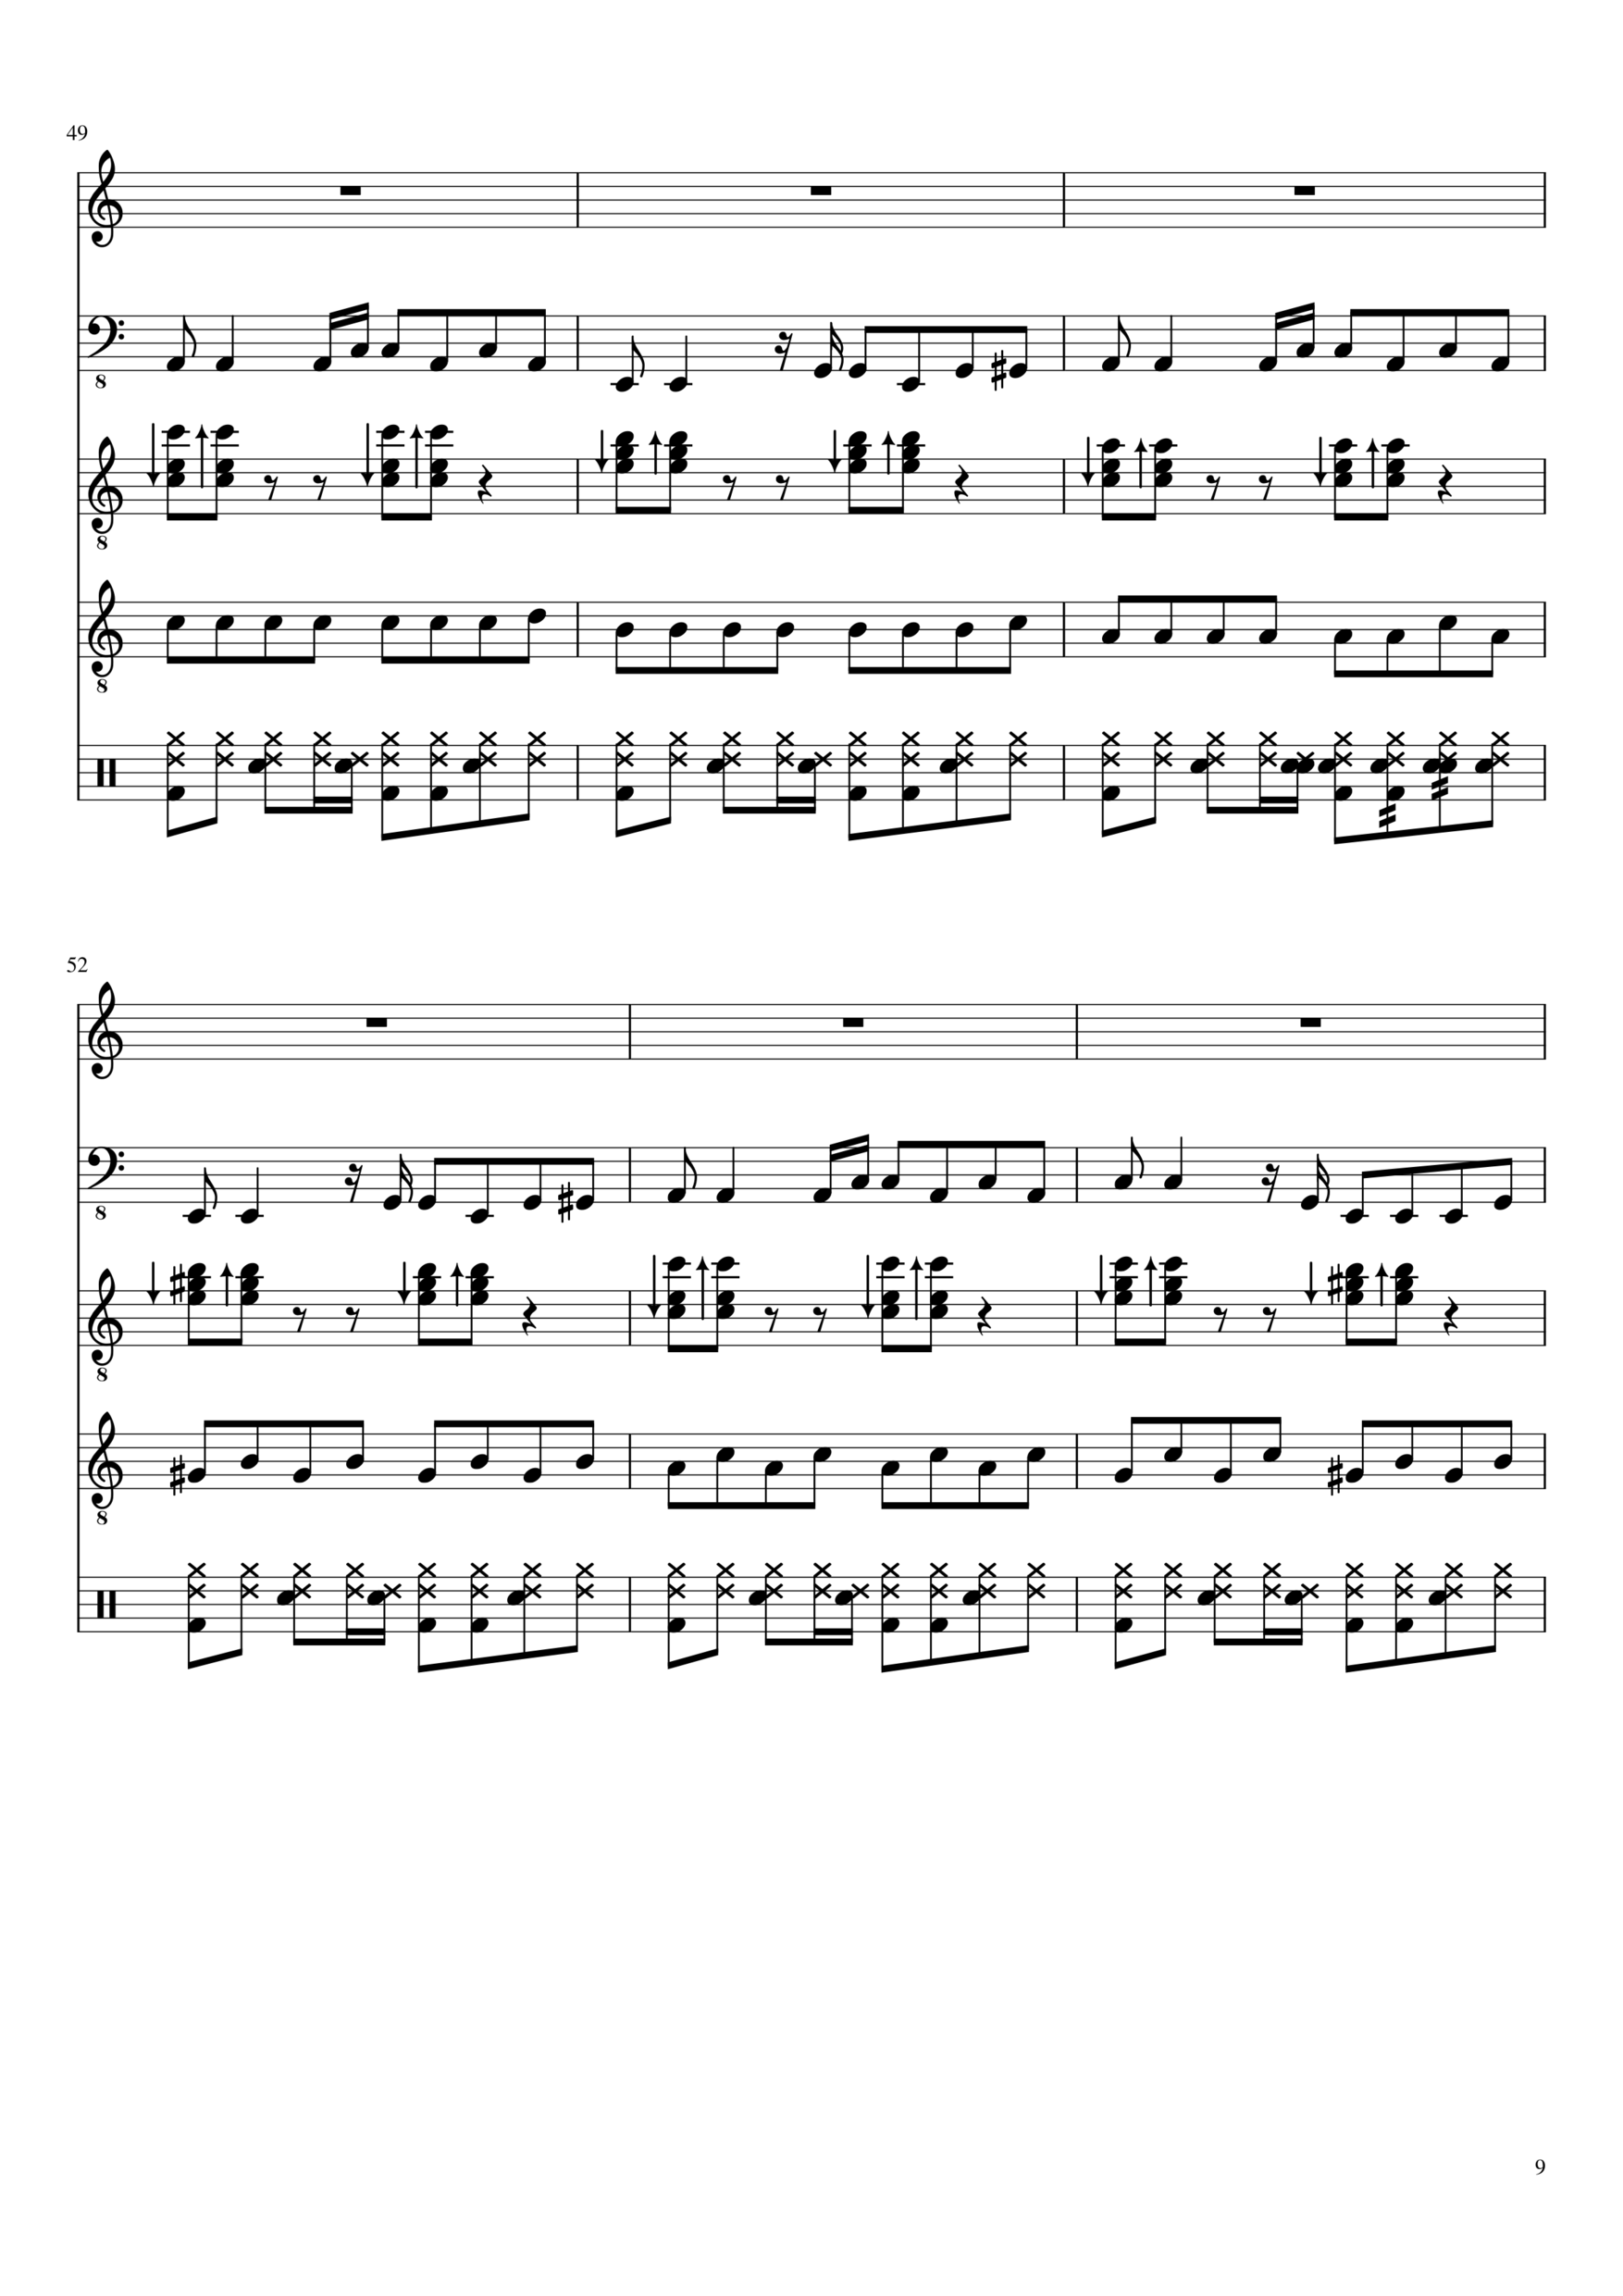 Vechnaya lyubov slide, Image 9